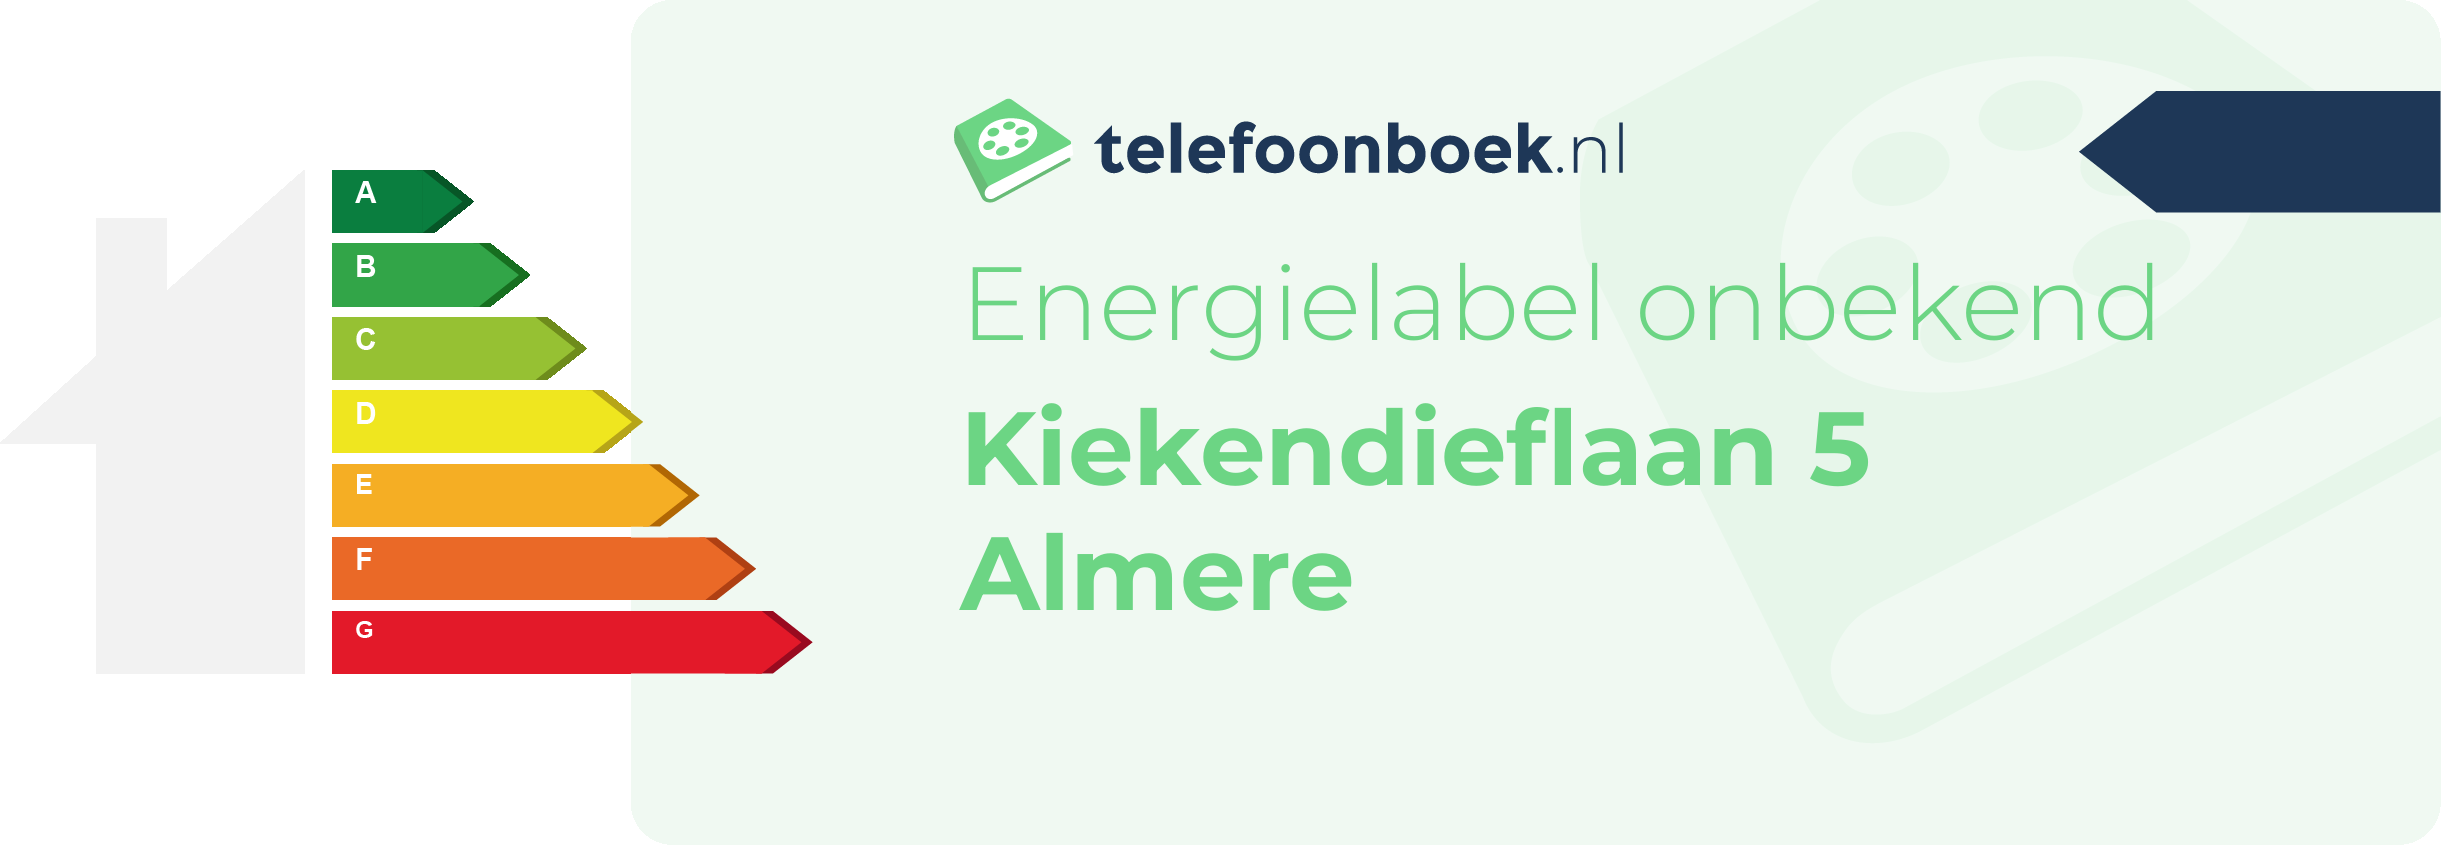 Energielabel Kiekendieflaan 5 Almere